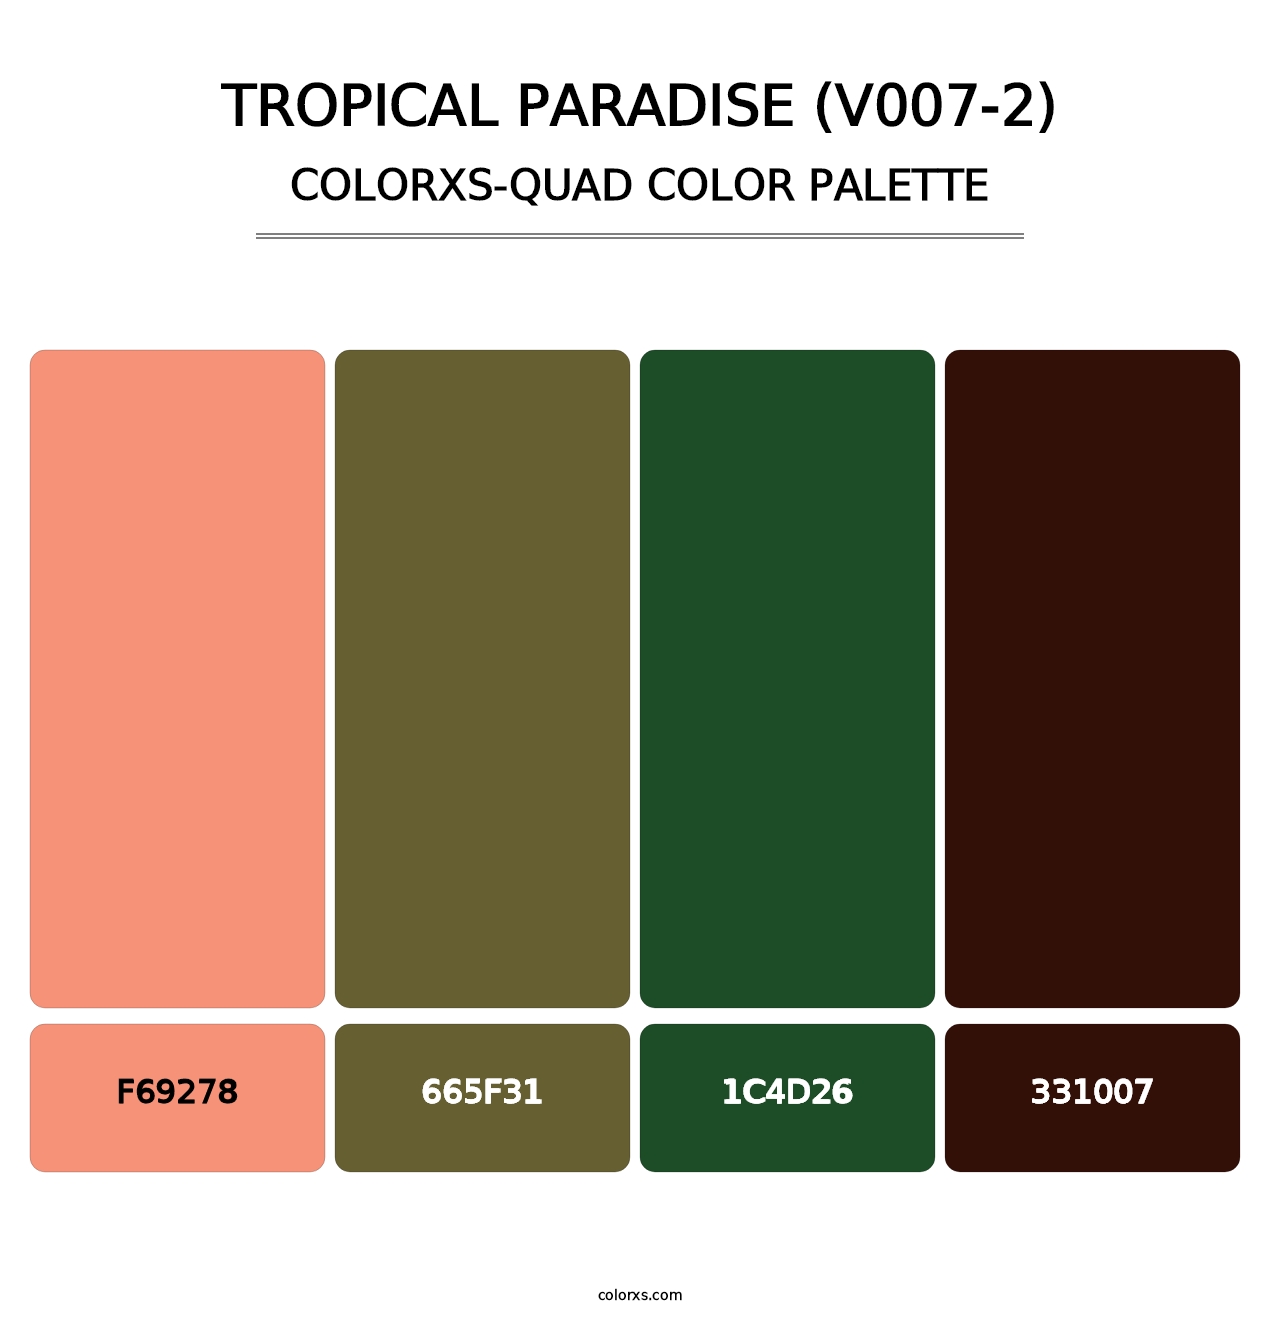 Tropical Paradise (V007-2) - Colorxs Quad Palette